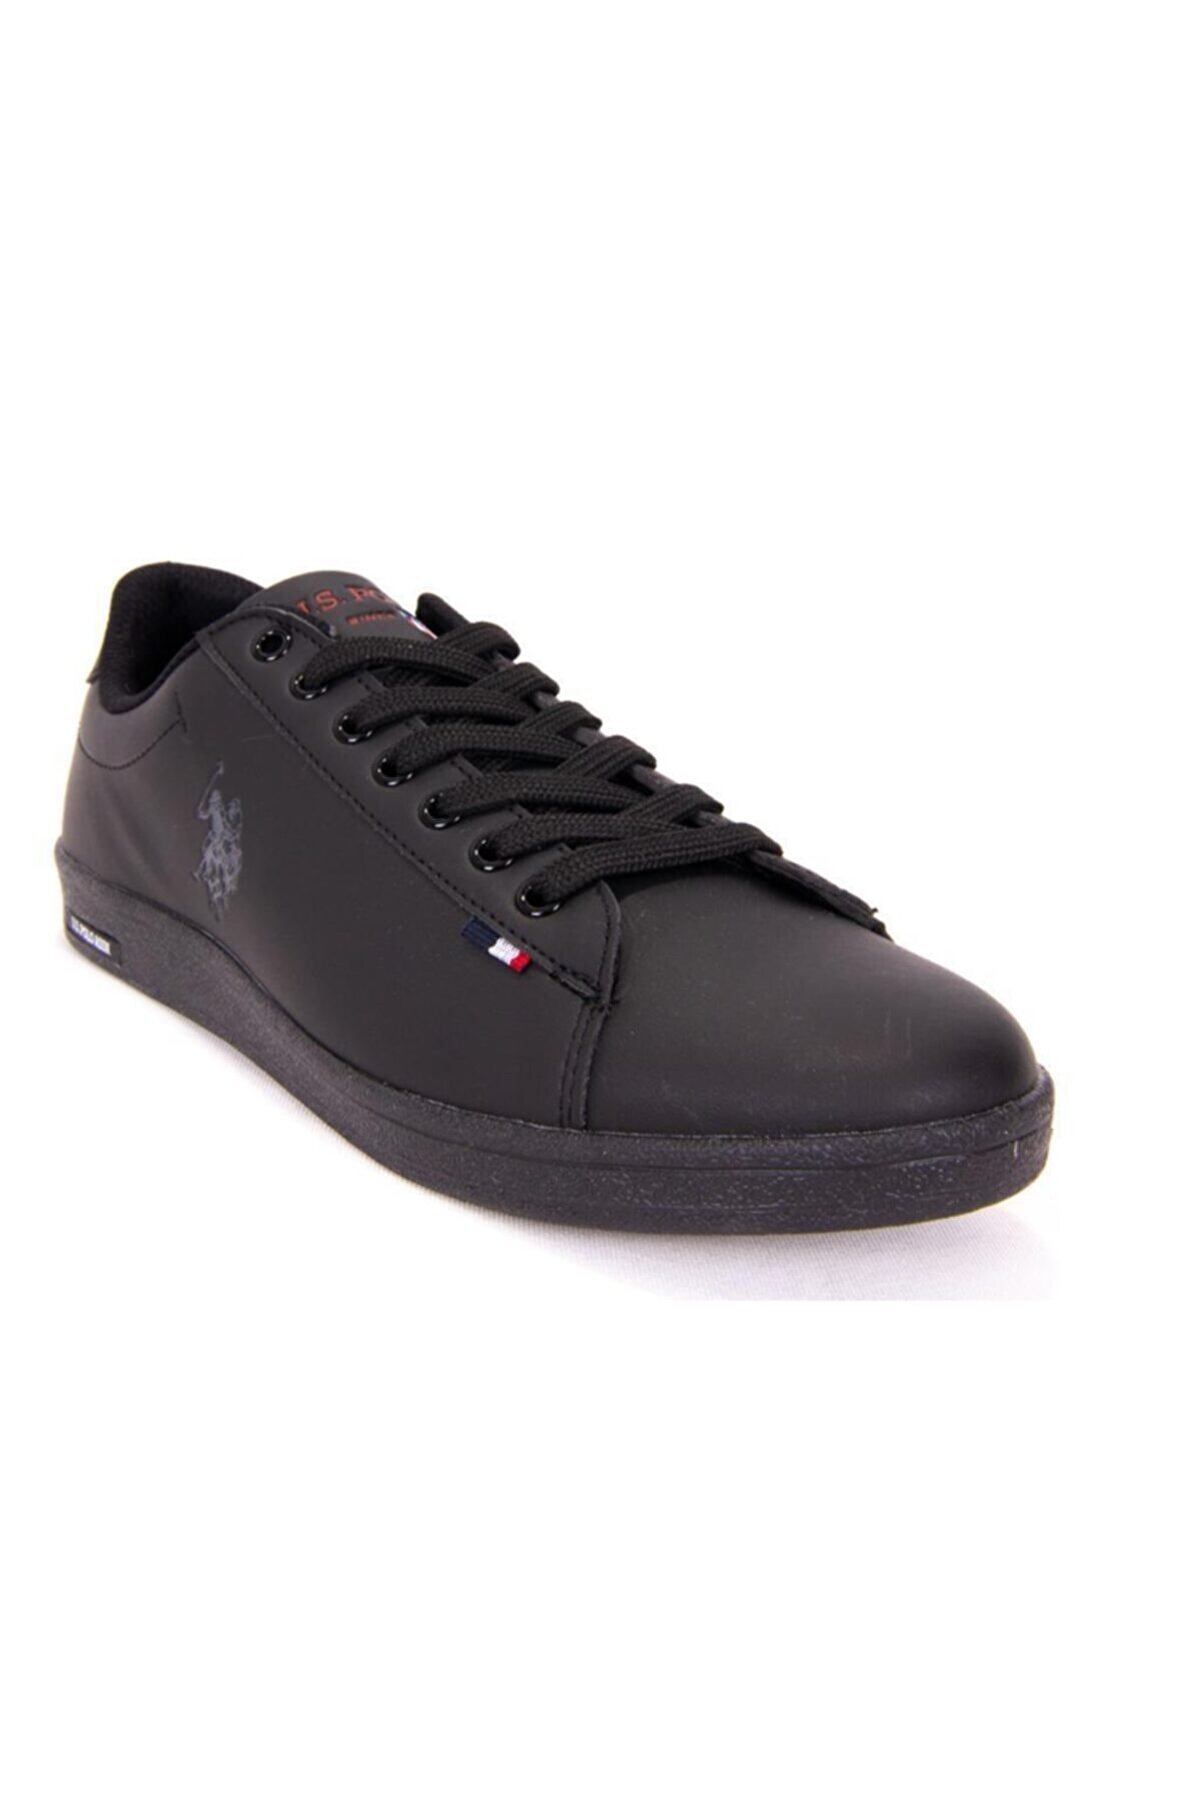 U.S. Polo Assn. FRANCO DHM Siyah Kadın Sneaker Ayakkabı 100548977